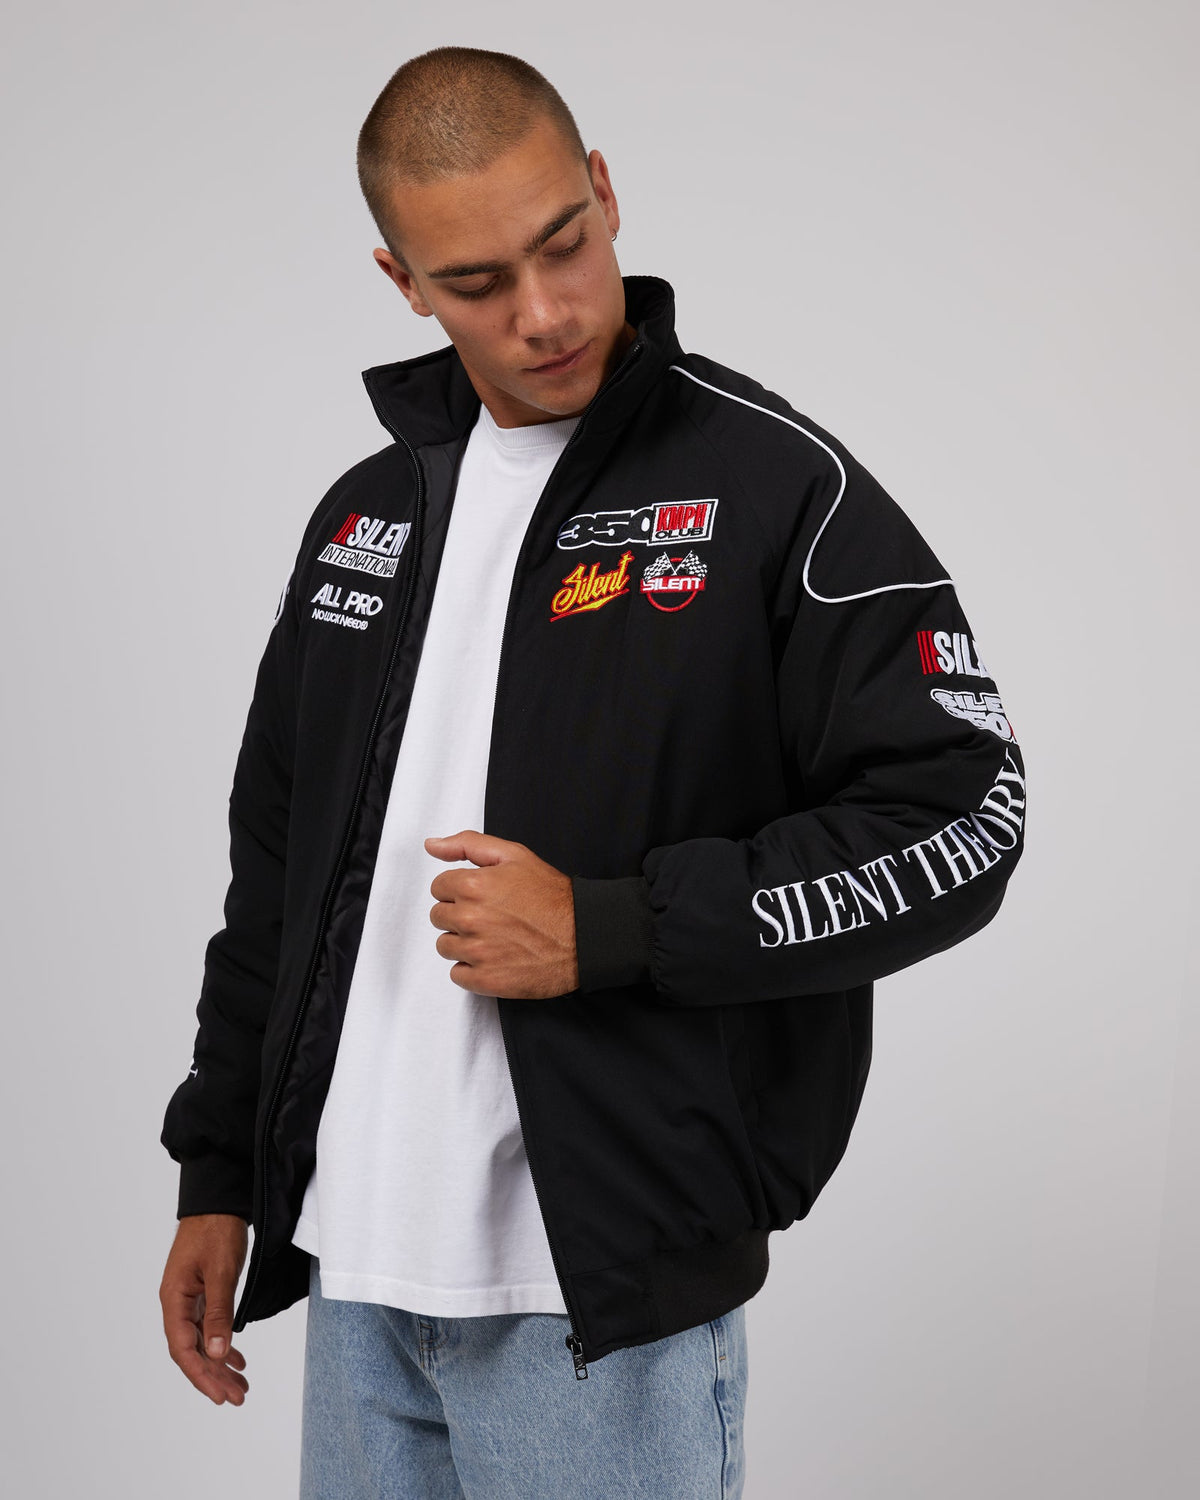 Silent Theory-Racer Jacket Black-Edge Clothing